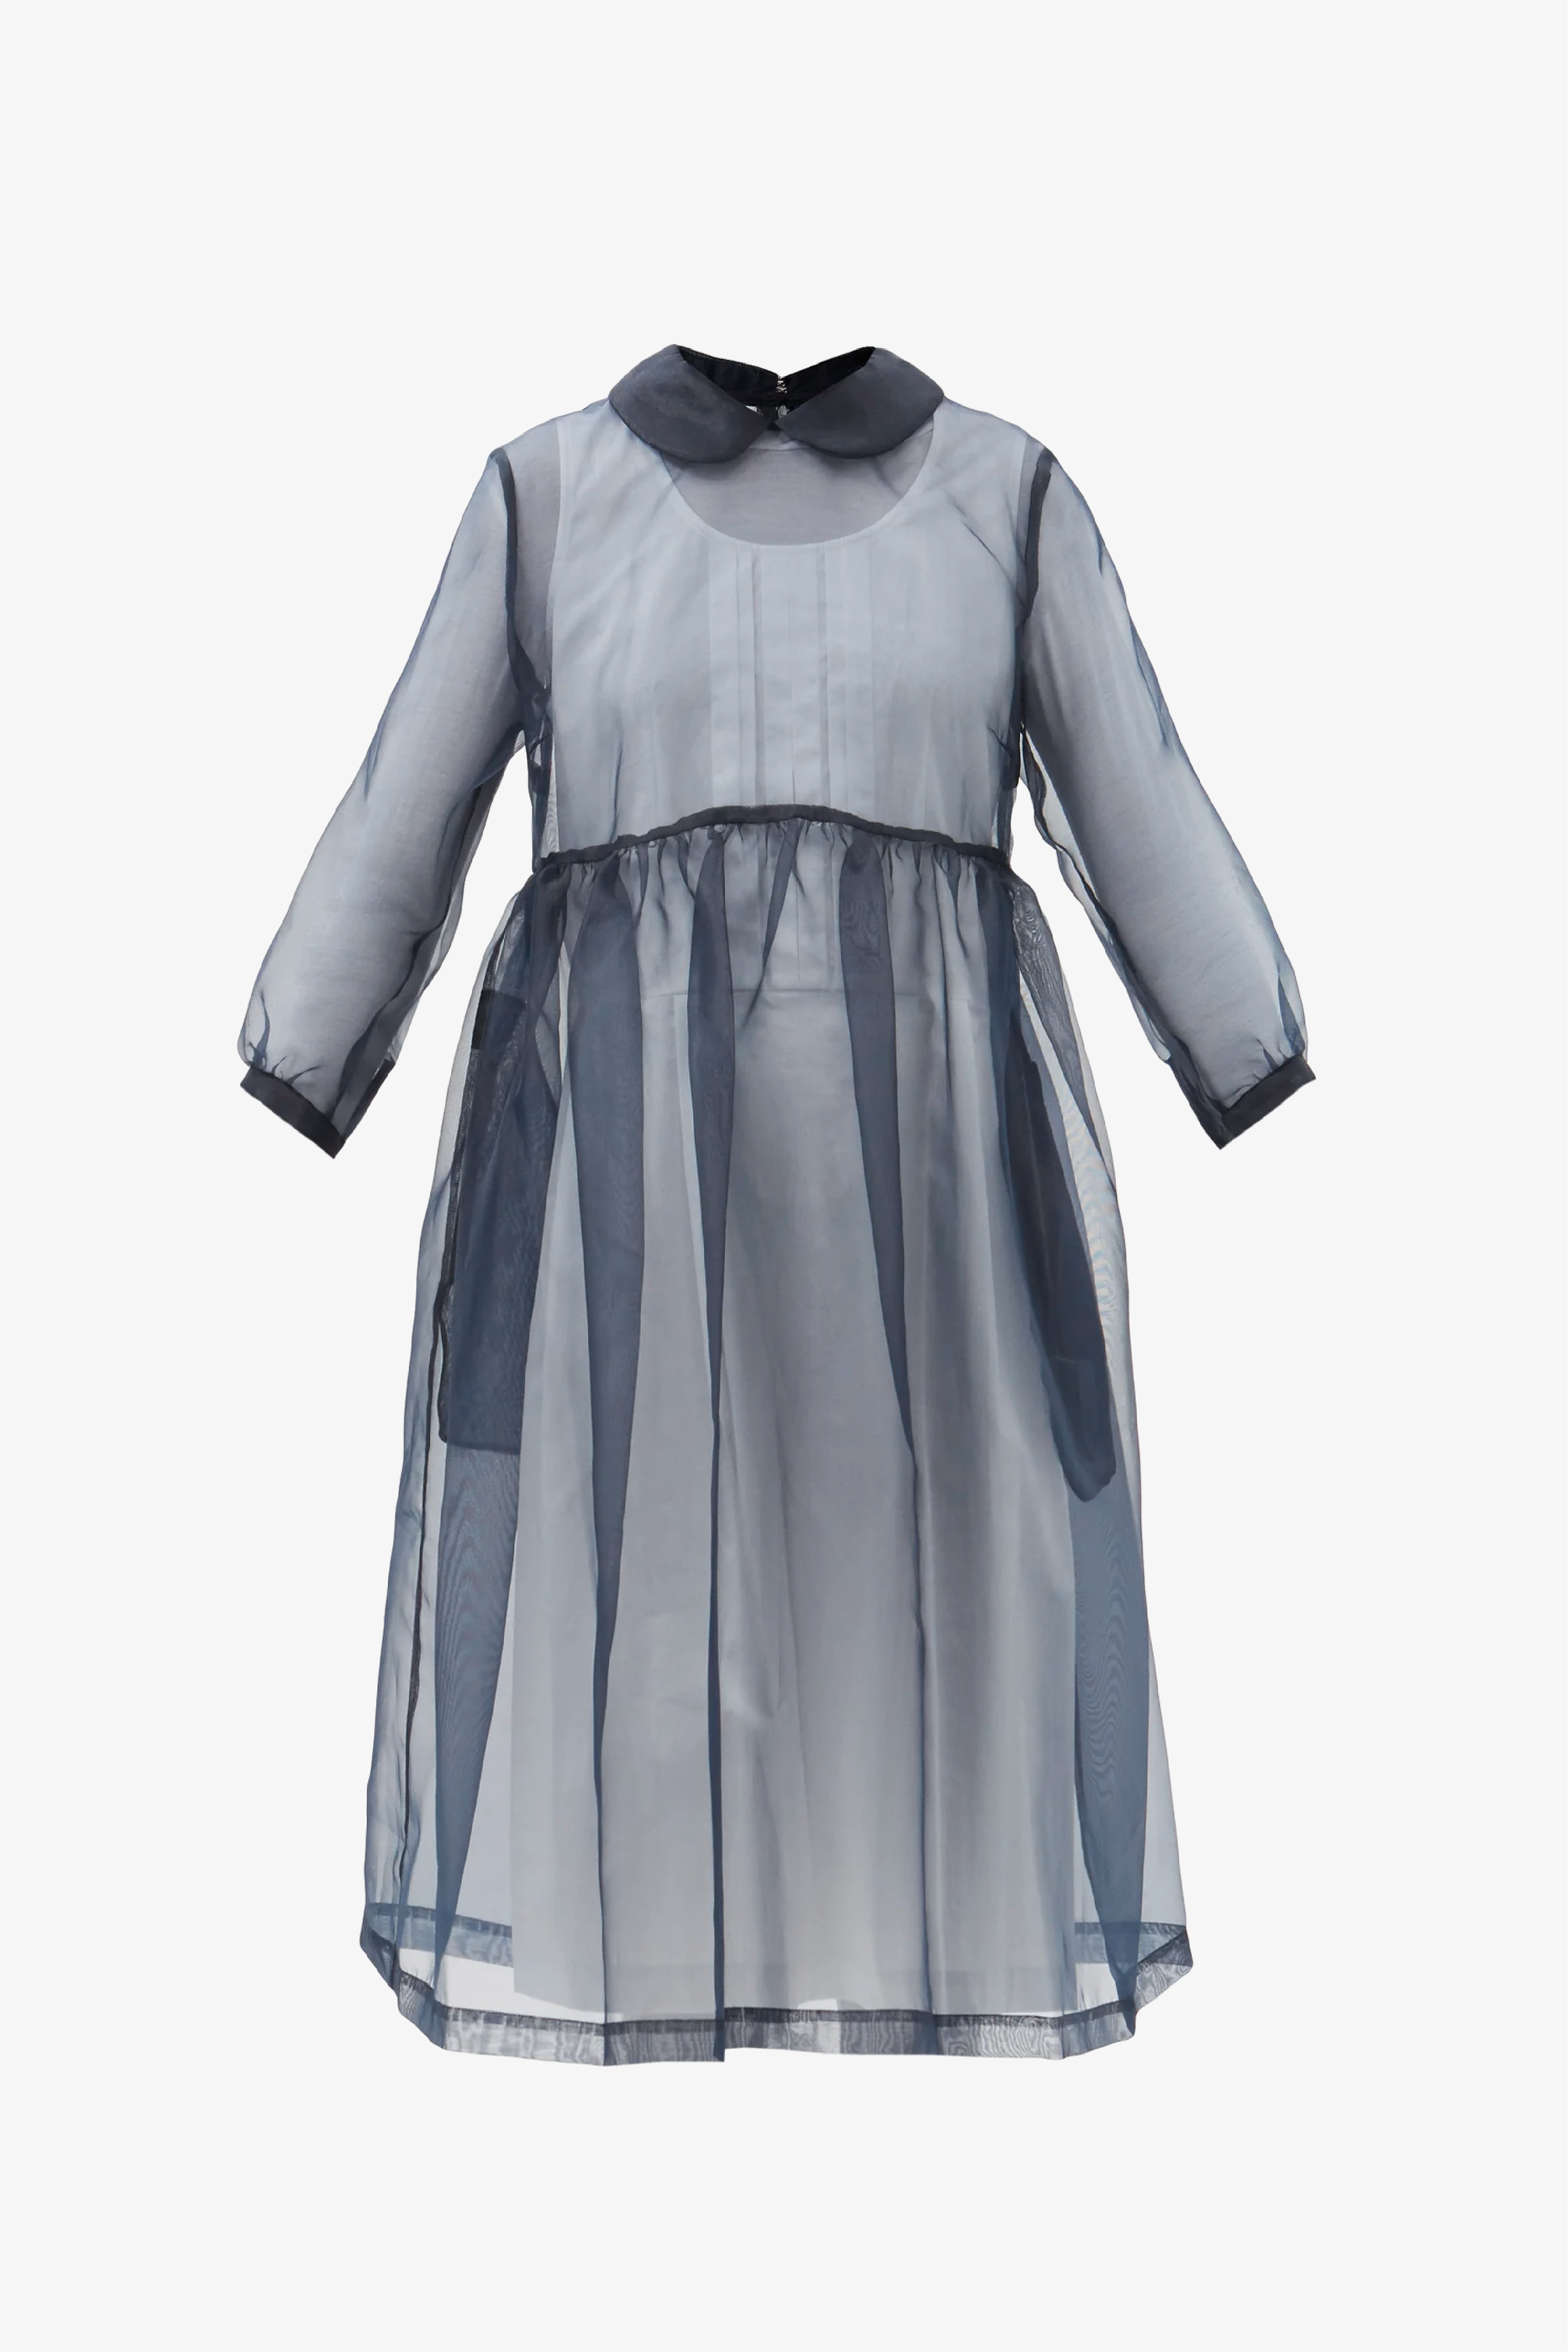 Selectshop FRAME - COMME DES GARÇONS GIRL Dress Dresses Dubai